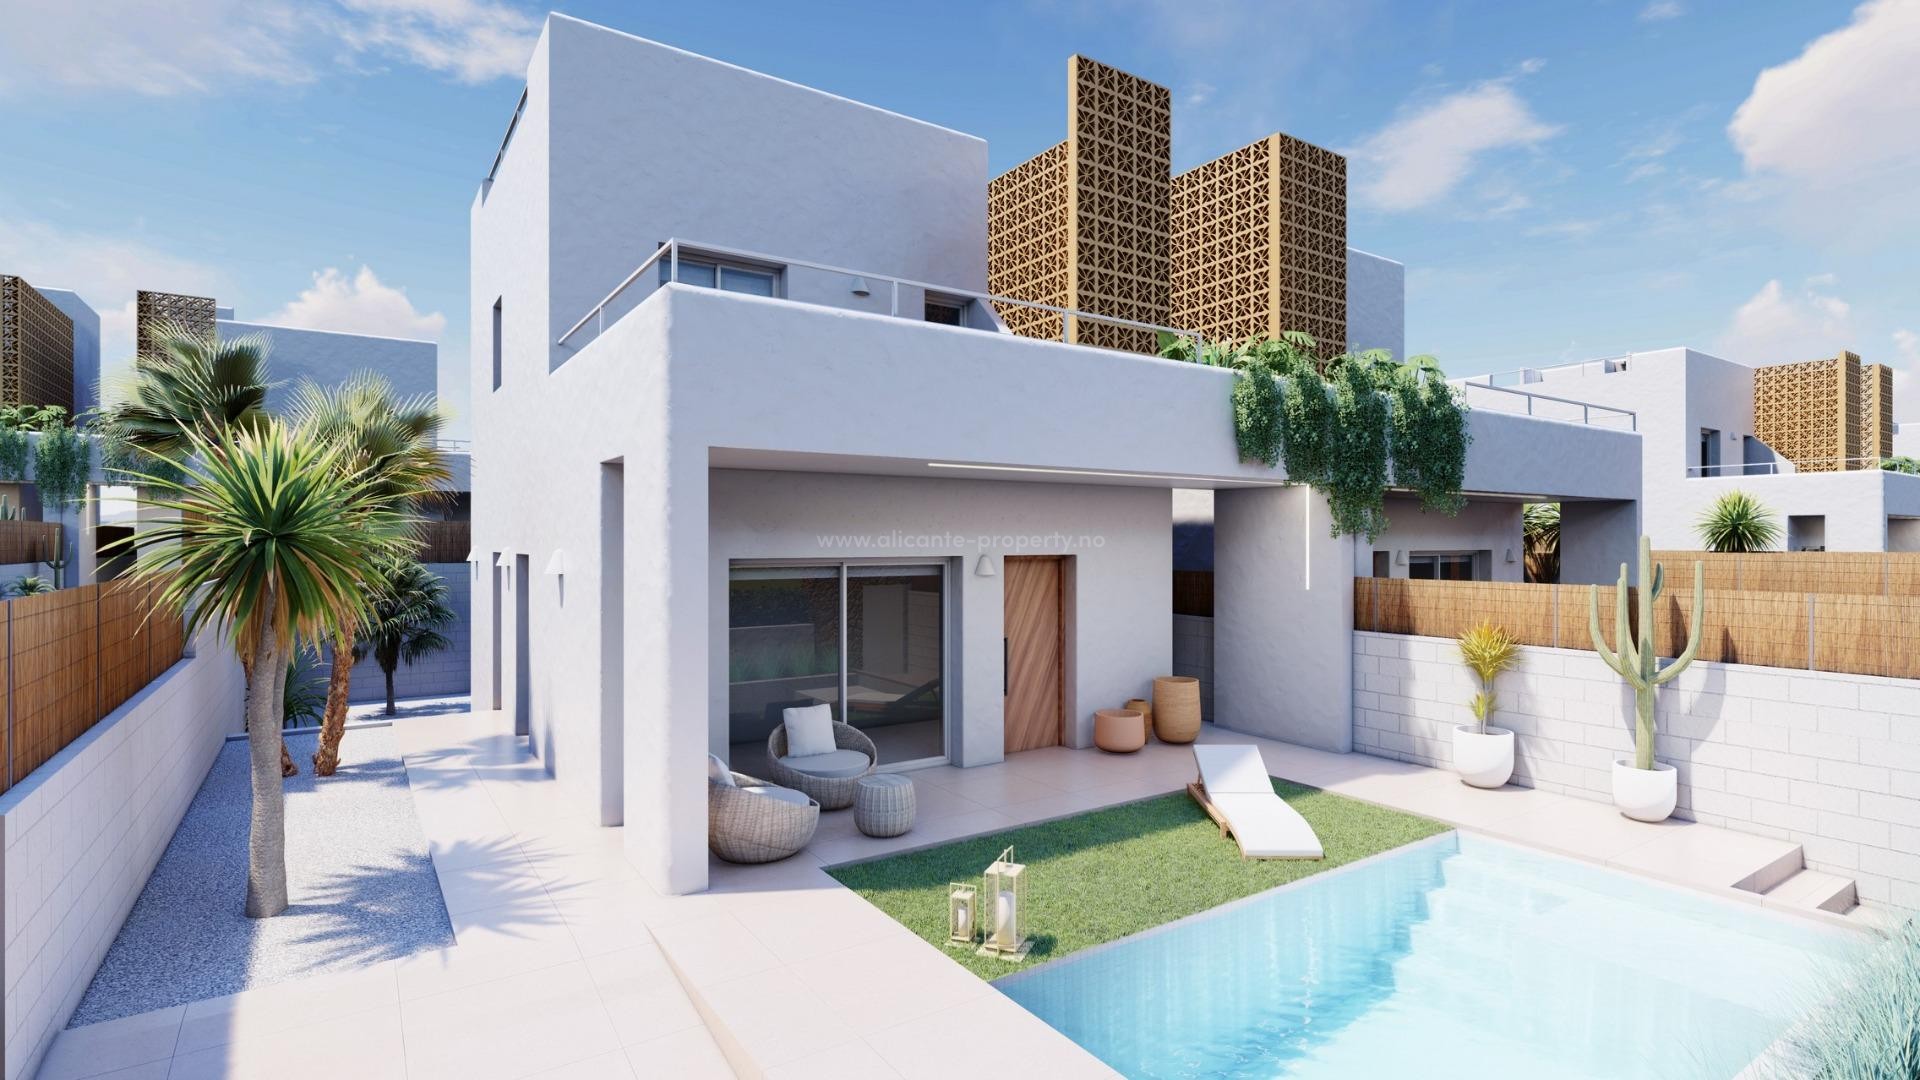 Nye villaer/hus i Pilar de la Horadada, 3 soverom, 3 bad, stor anlagt hage med privat svømmebasseng og parkeringsplass.